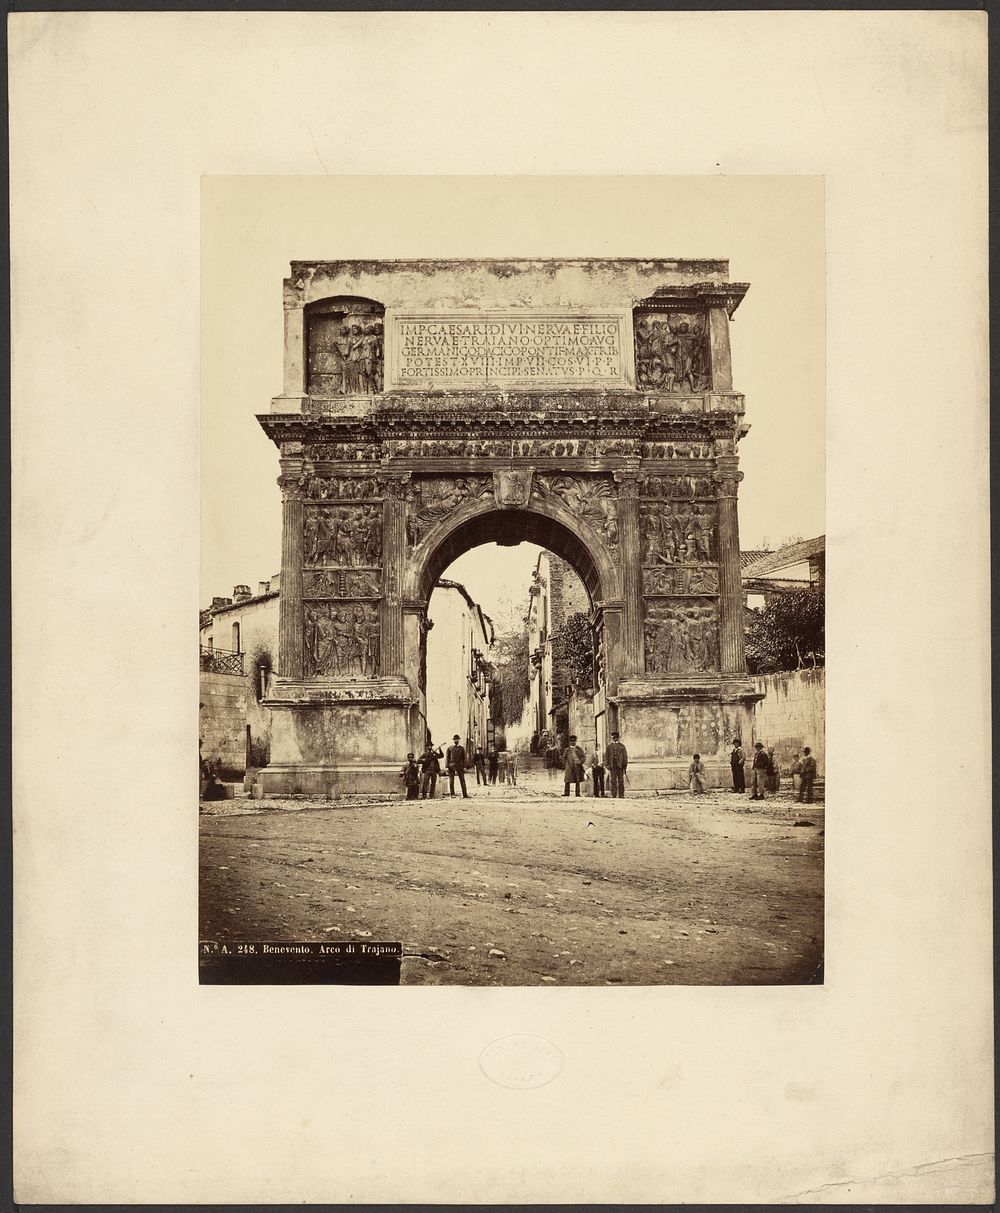 Benevento, Arco di Trajano by Roberto Rive